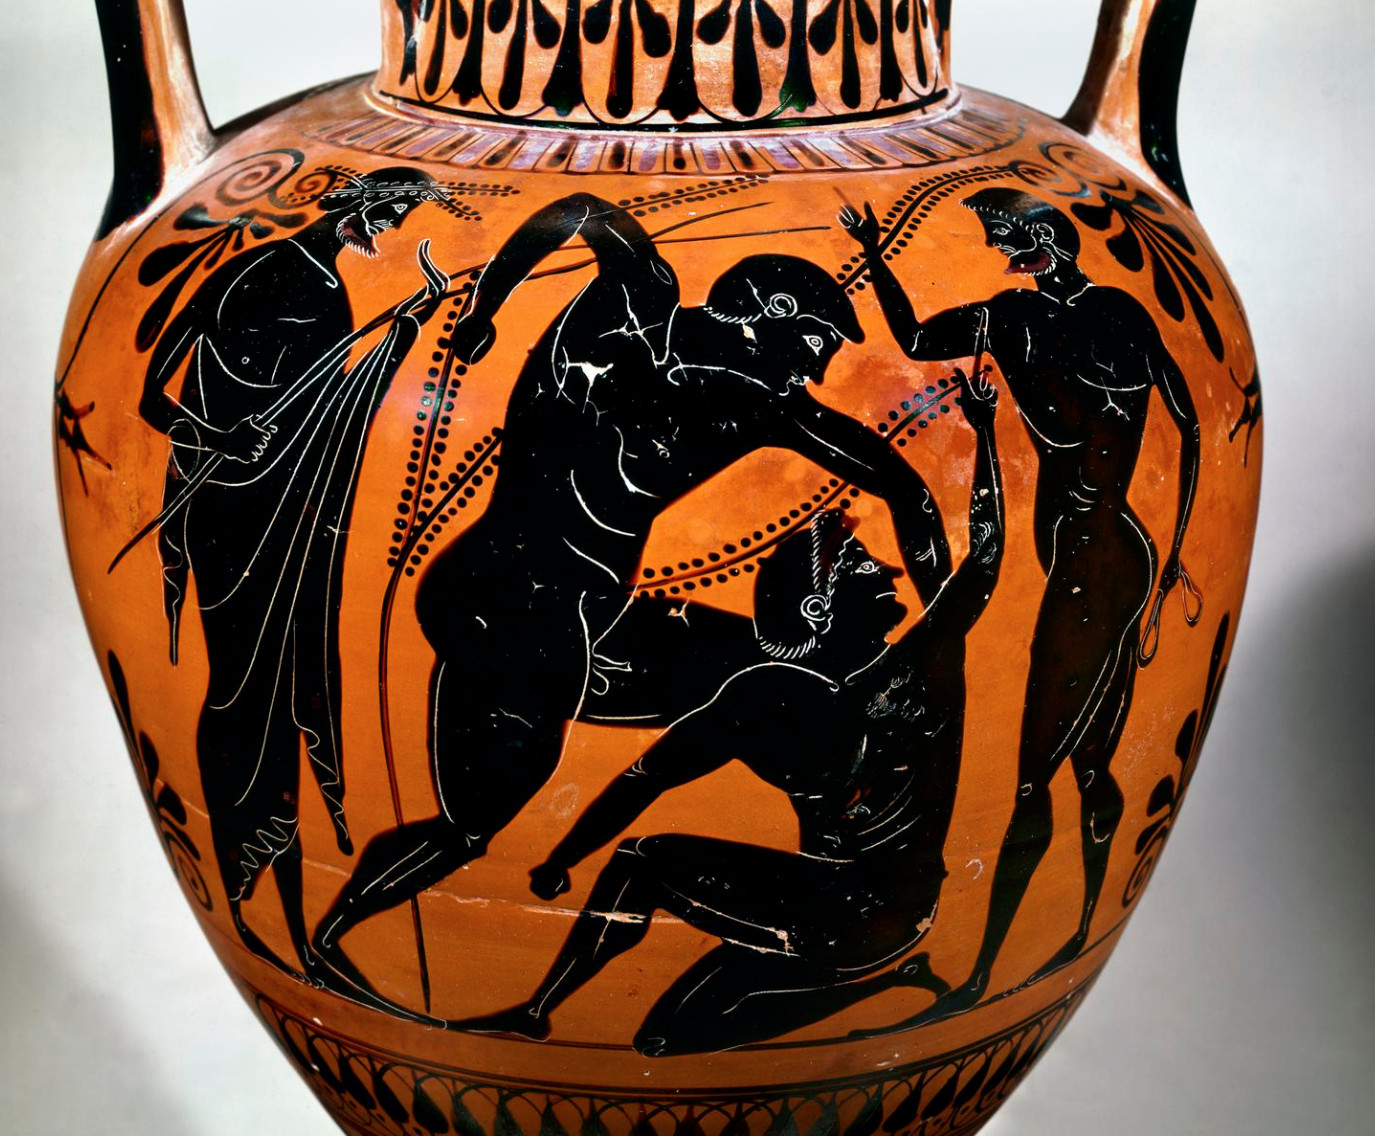 Griechische Amphora mit Darstellung eines Ringkampfs. Wikimedia, Lizenz Creative Commons